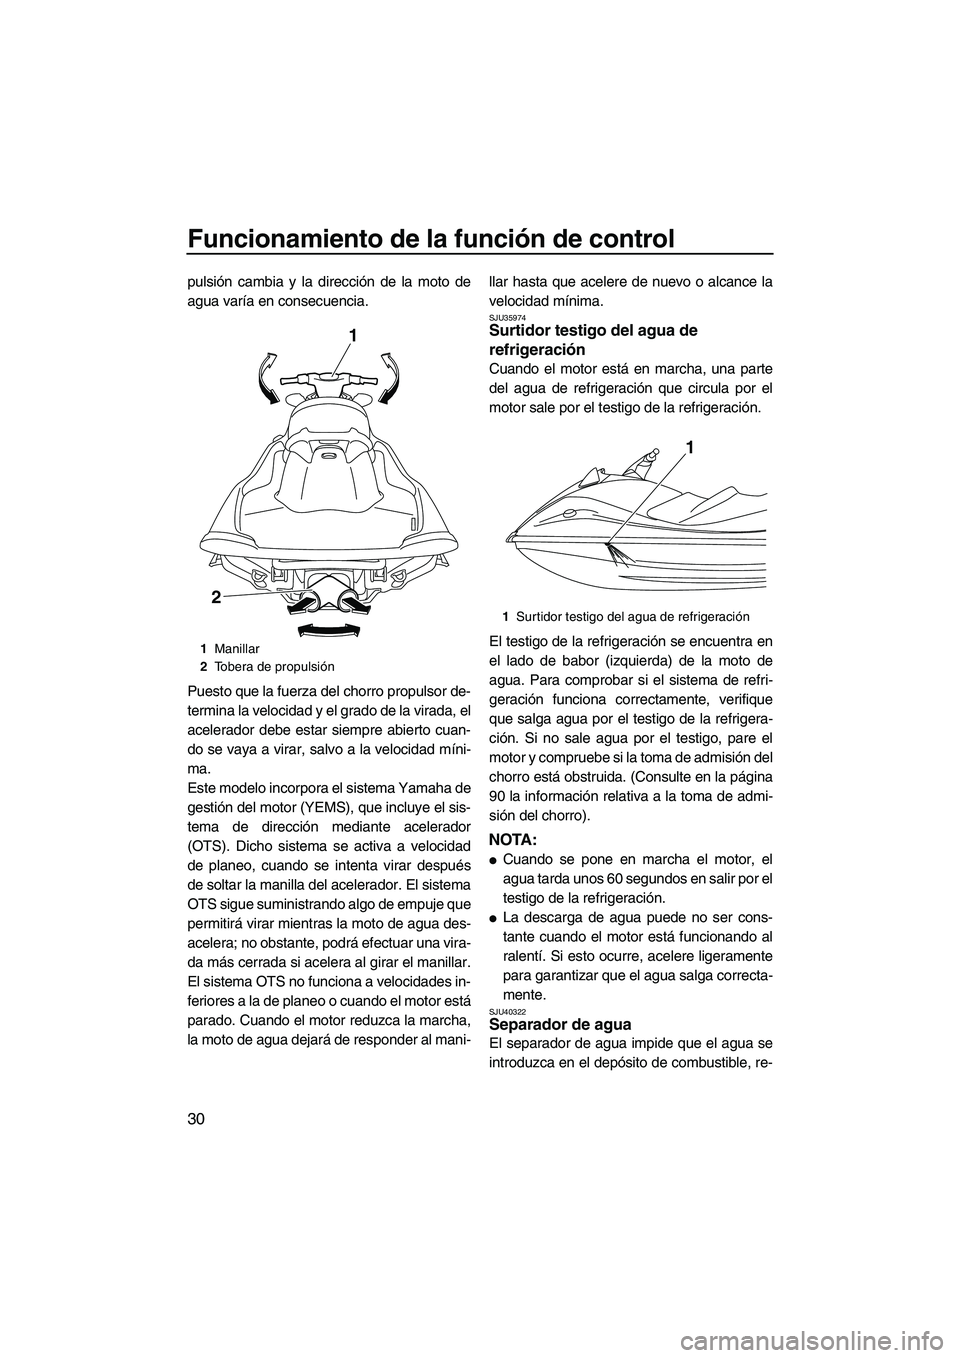 YAMAHA VXS 2012  Manuale de Empleo (in Spanish) Funcionamiento de la función de control
30
pulsión cambia y la dirección de la moto de
agua varía en consecuencia.
Puesto que la fuerza del chorro propulsor de-
termina la velocidad y el grado de 